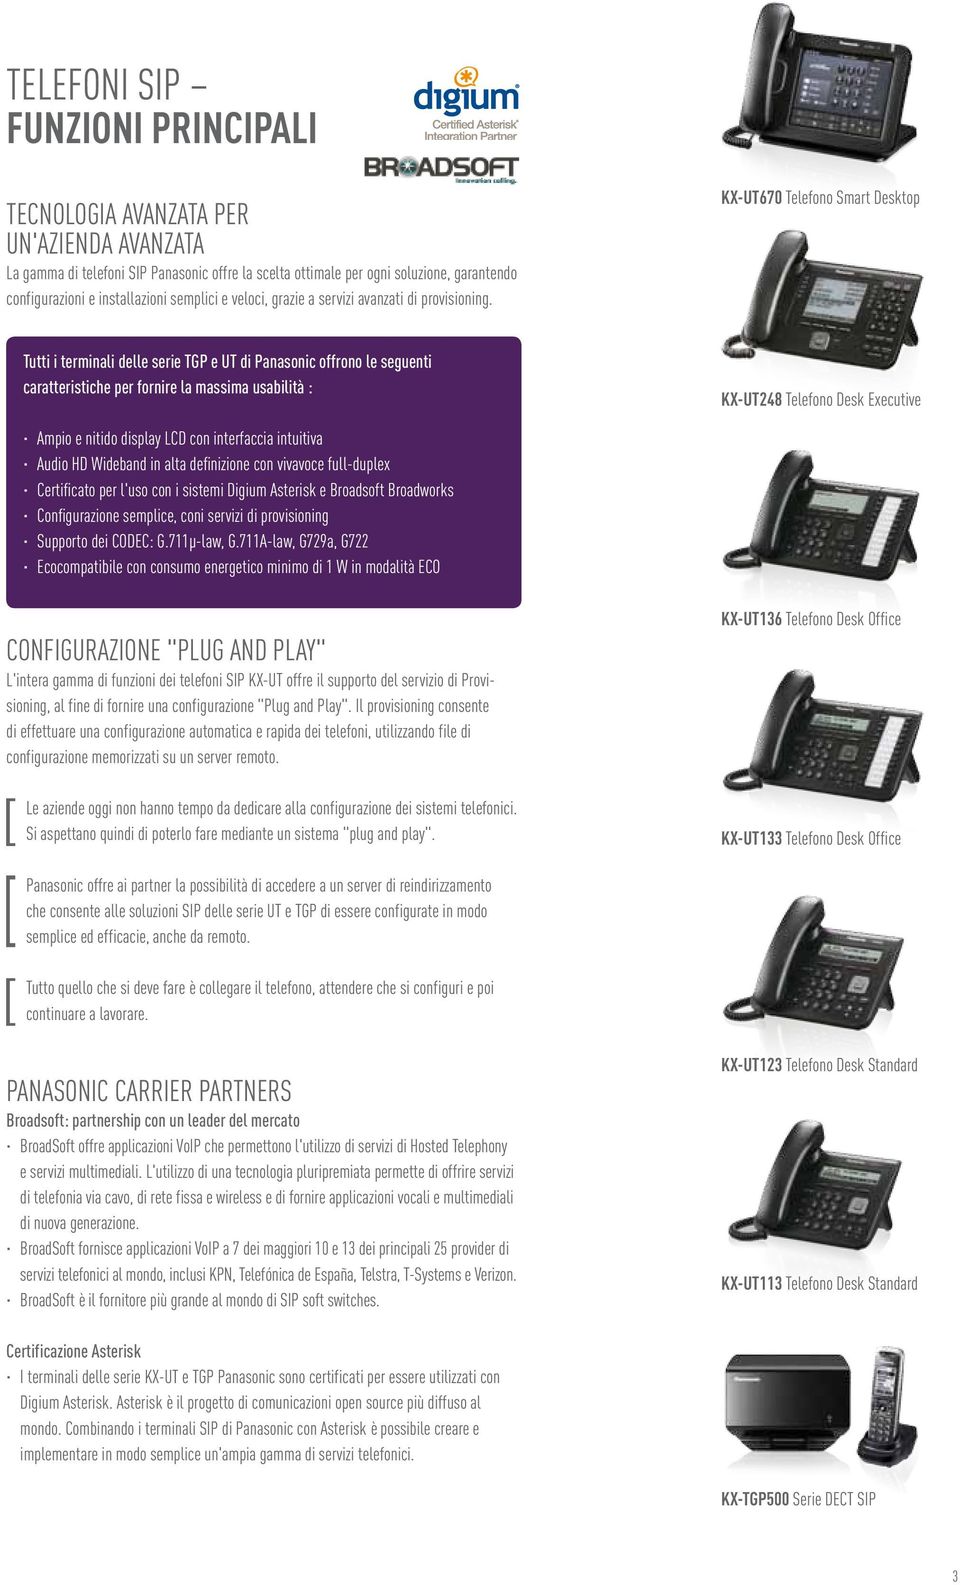 KX-UT670 Telefono Smart Desktop Tutti i terminali delle serie TGP e UT di Panasonic offrono le seguenti caratteristiche per fornire la massima usabilità : KX-UT248 Telefono Desk Executive Ampio e